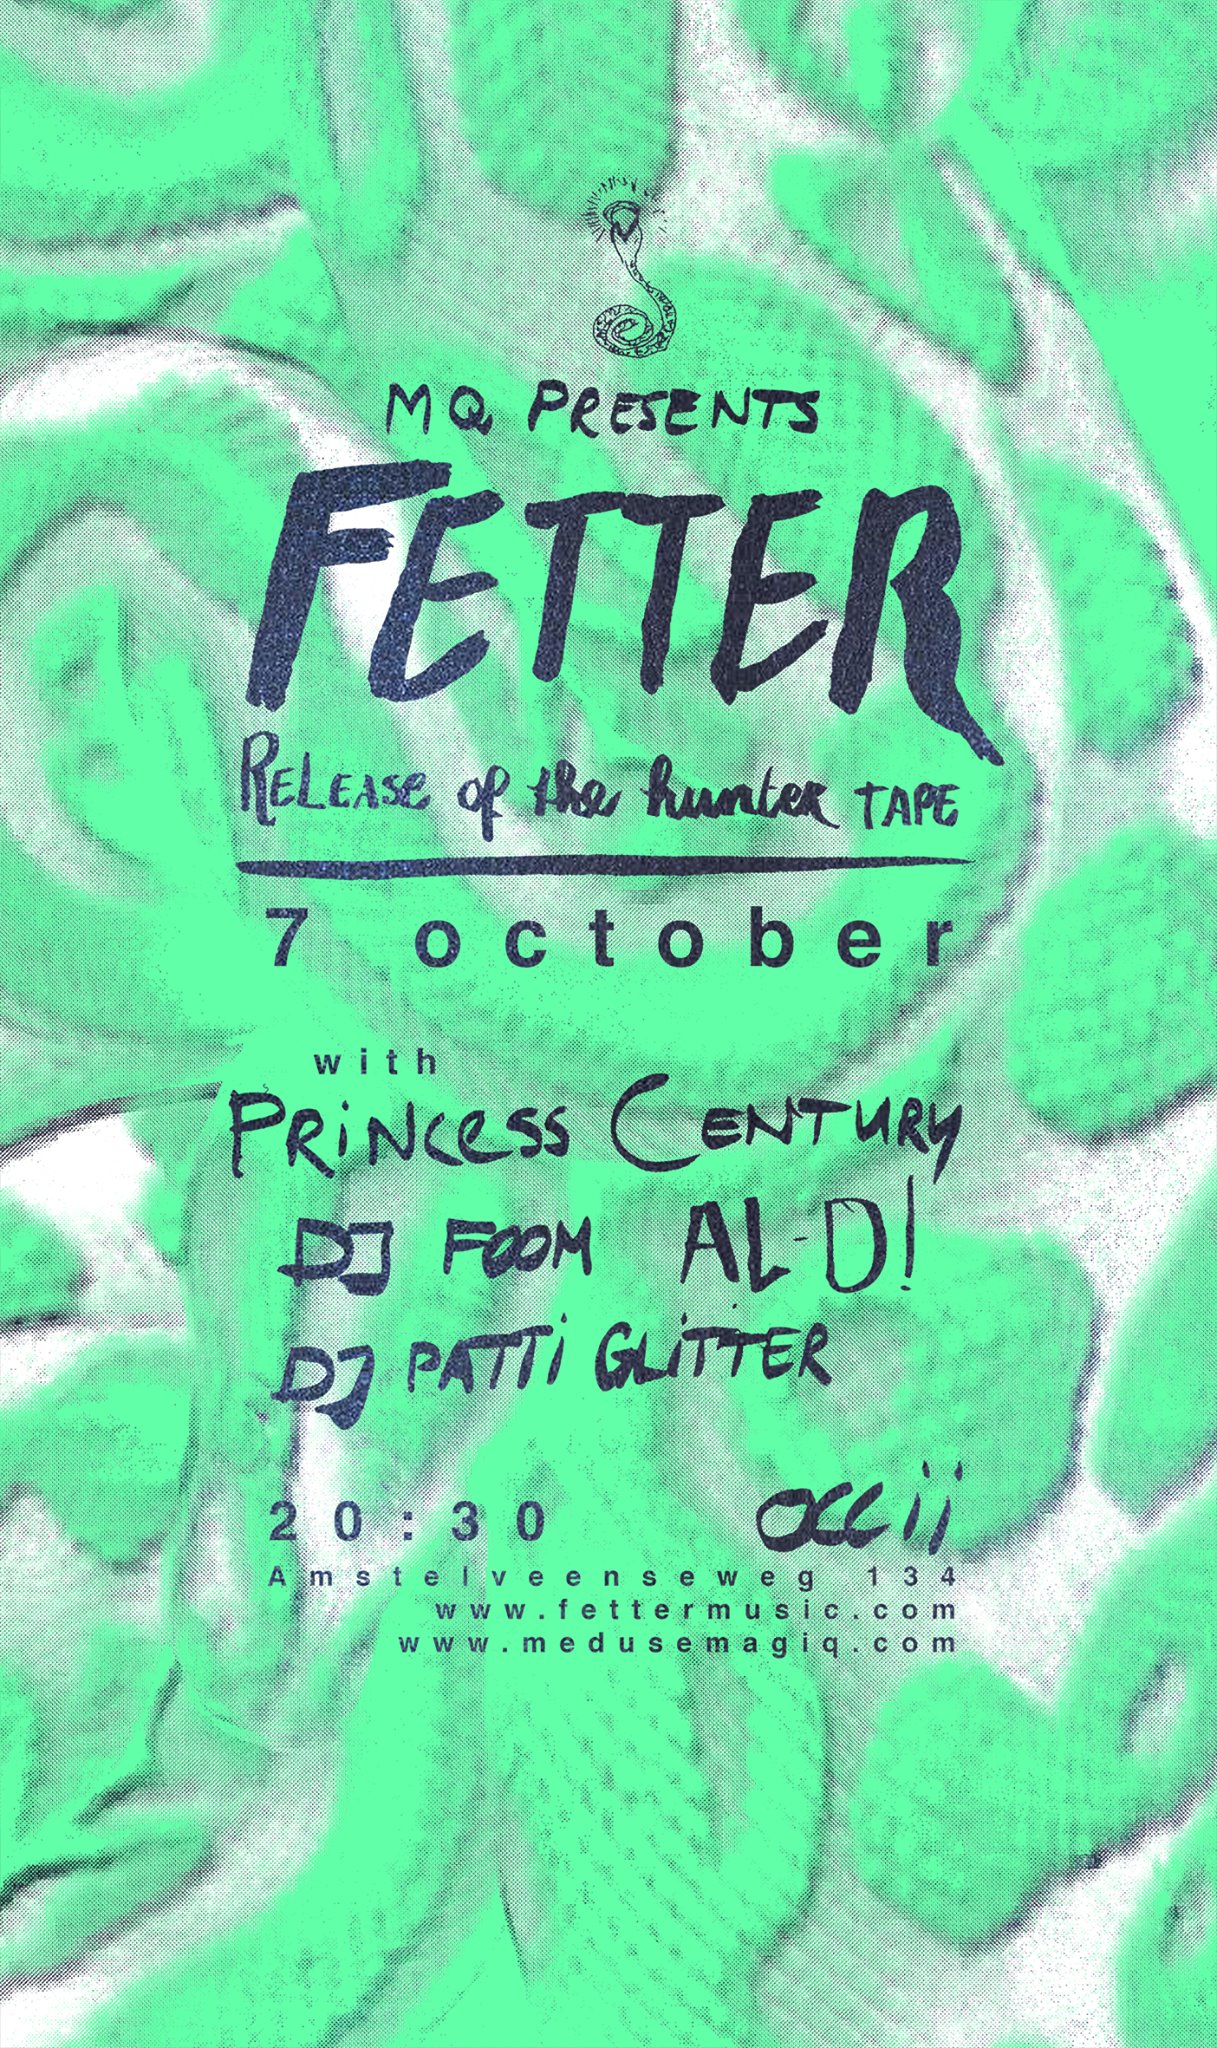 FETTER + PRINCESS CENTURY + AL-D! + DJ FOOM + DJ PATTI GLITTER